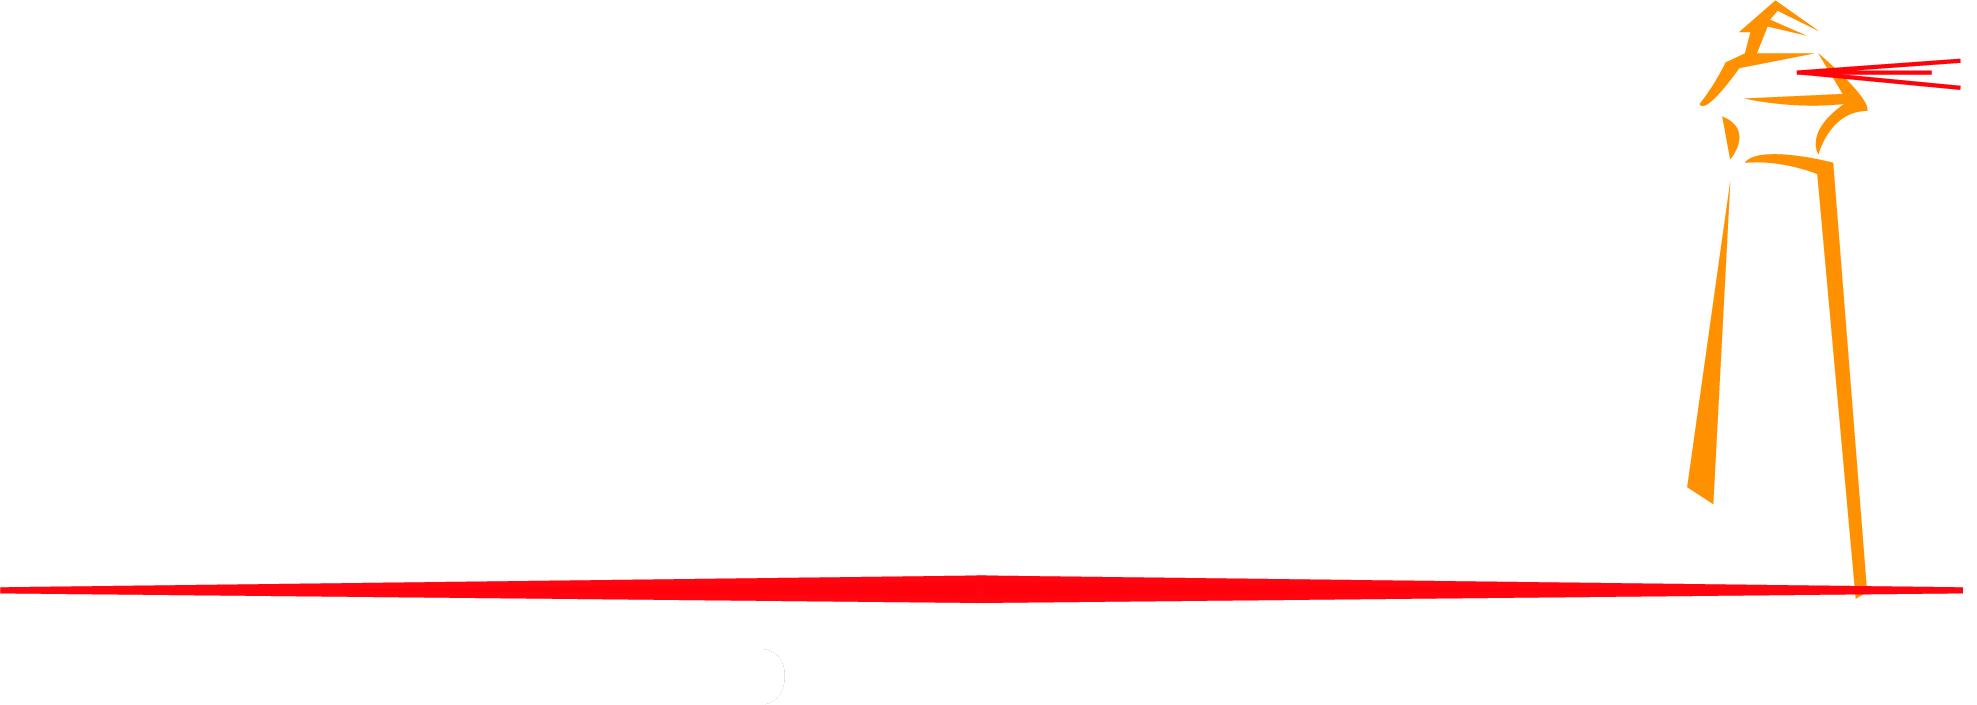 Harbor's